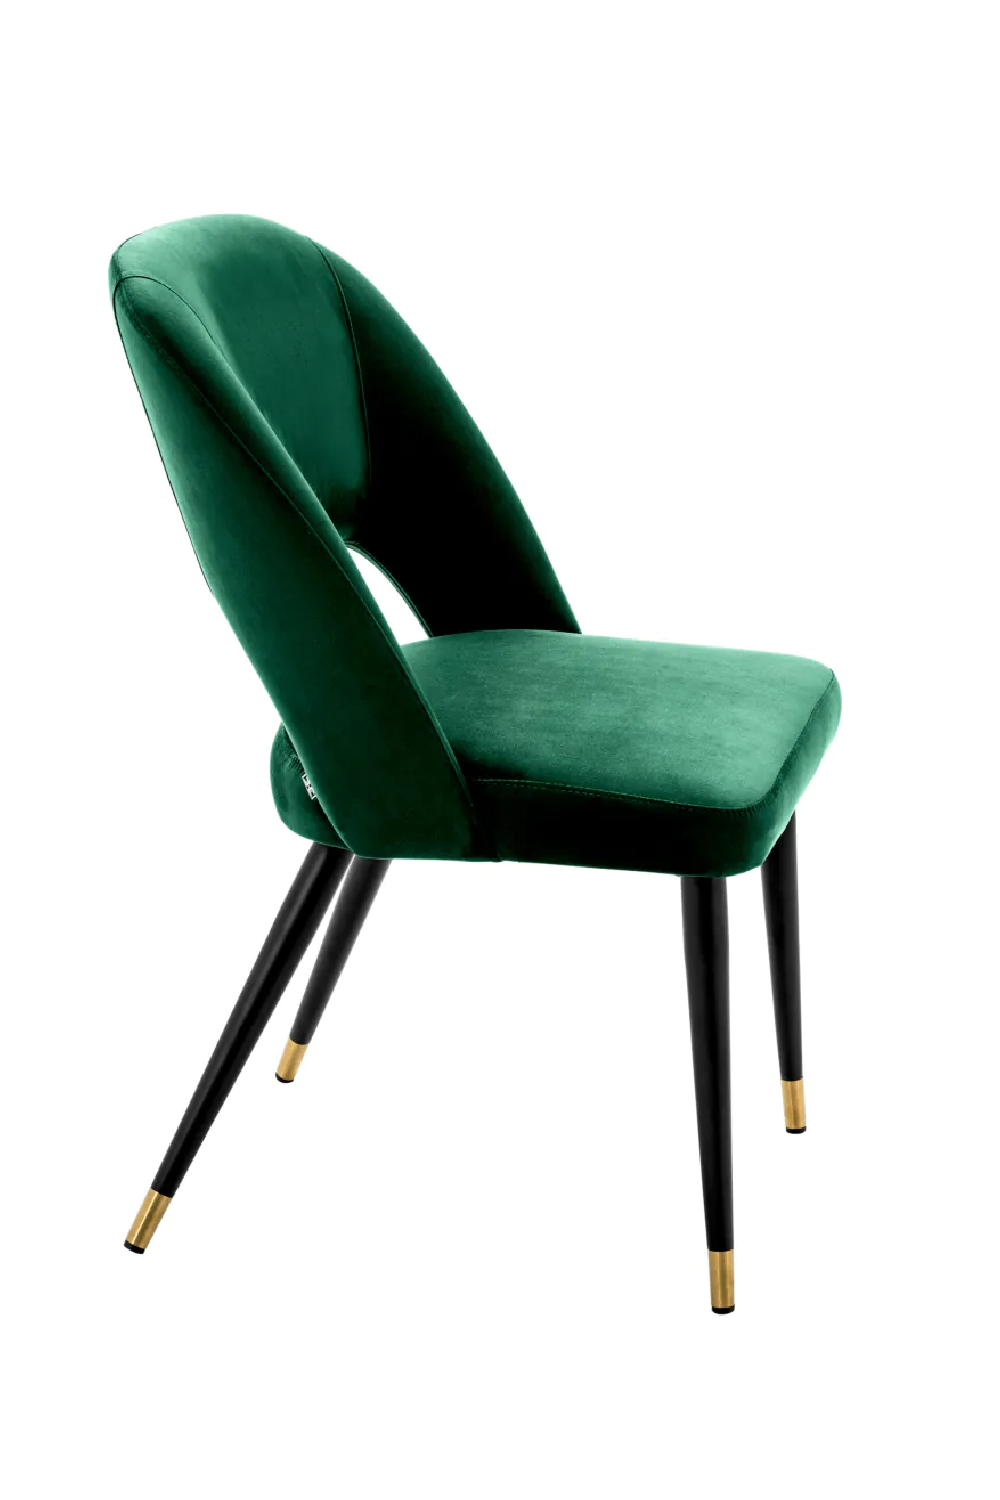 Mid-Century Modern Dining Chair | Eichholtz Cipria | Oroa.com